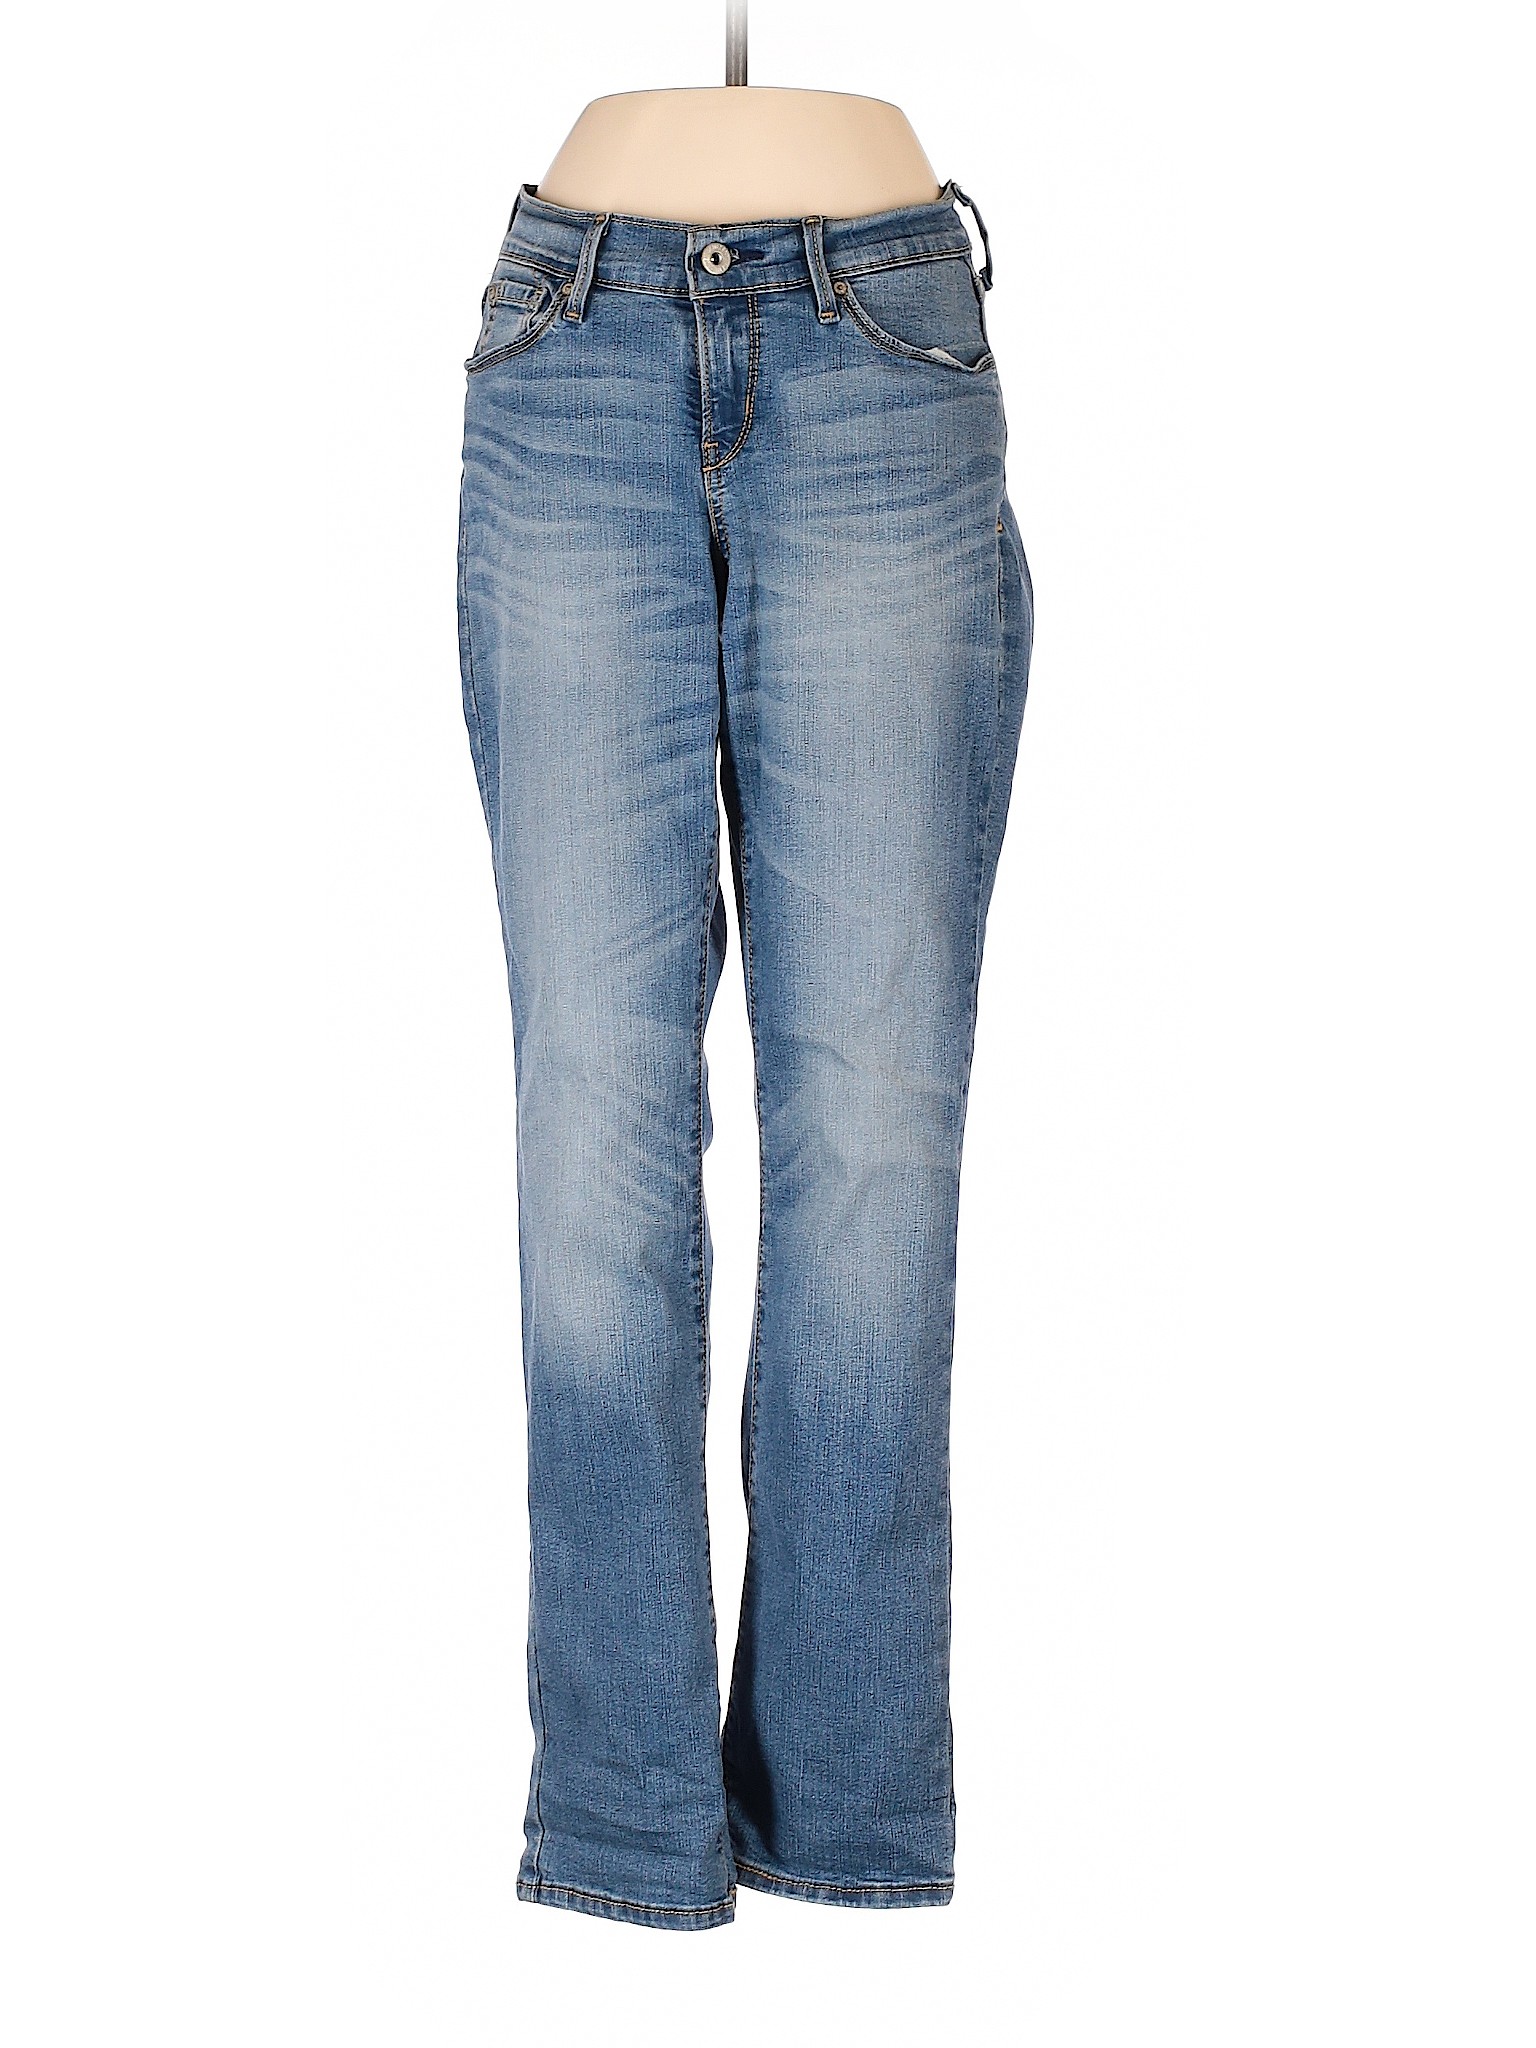 Denizen from Levi's Women Blue Jeans 26W | eBay